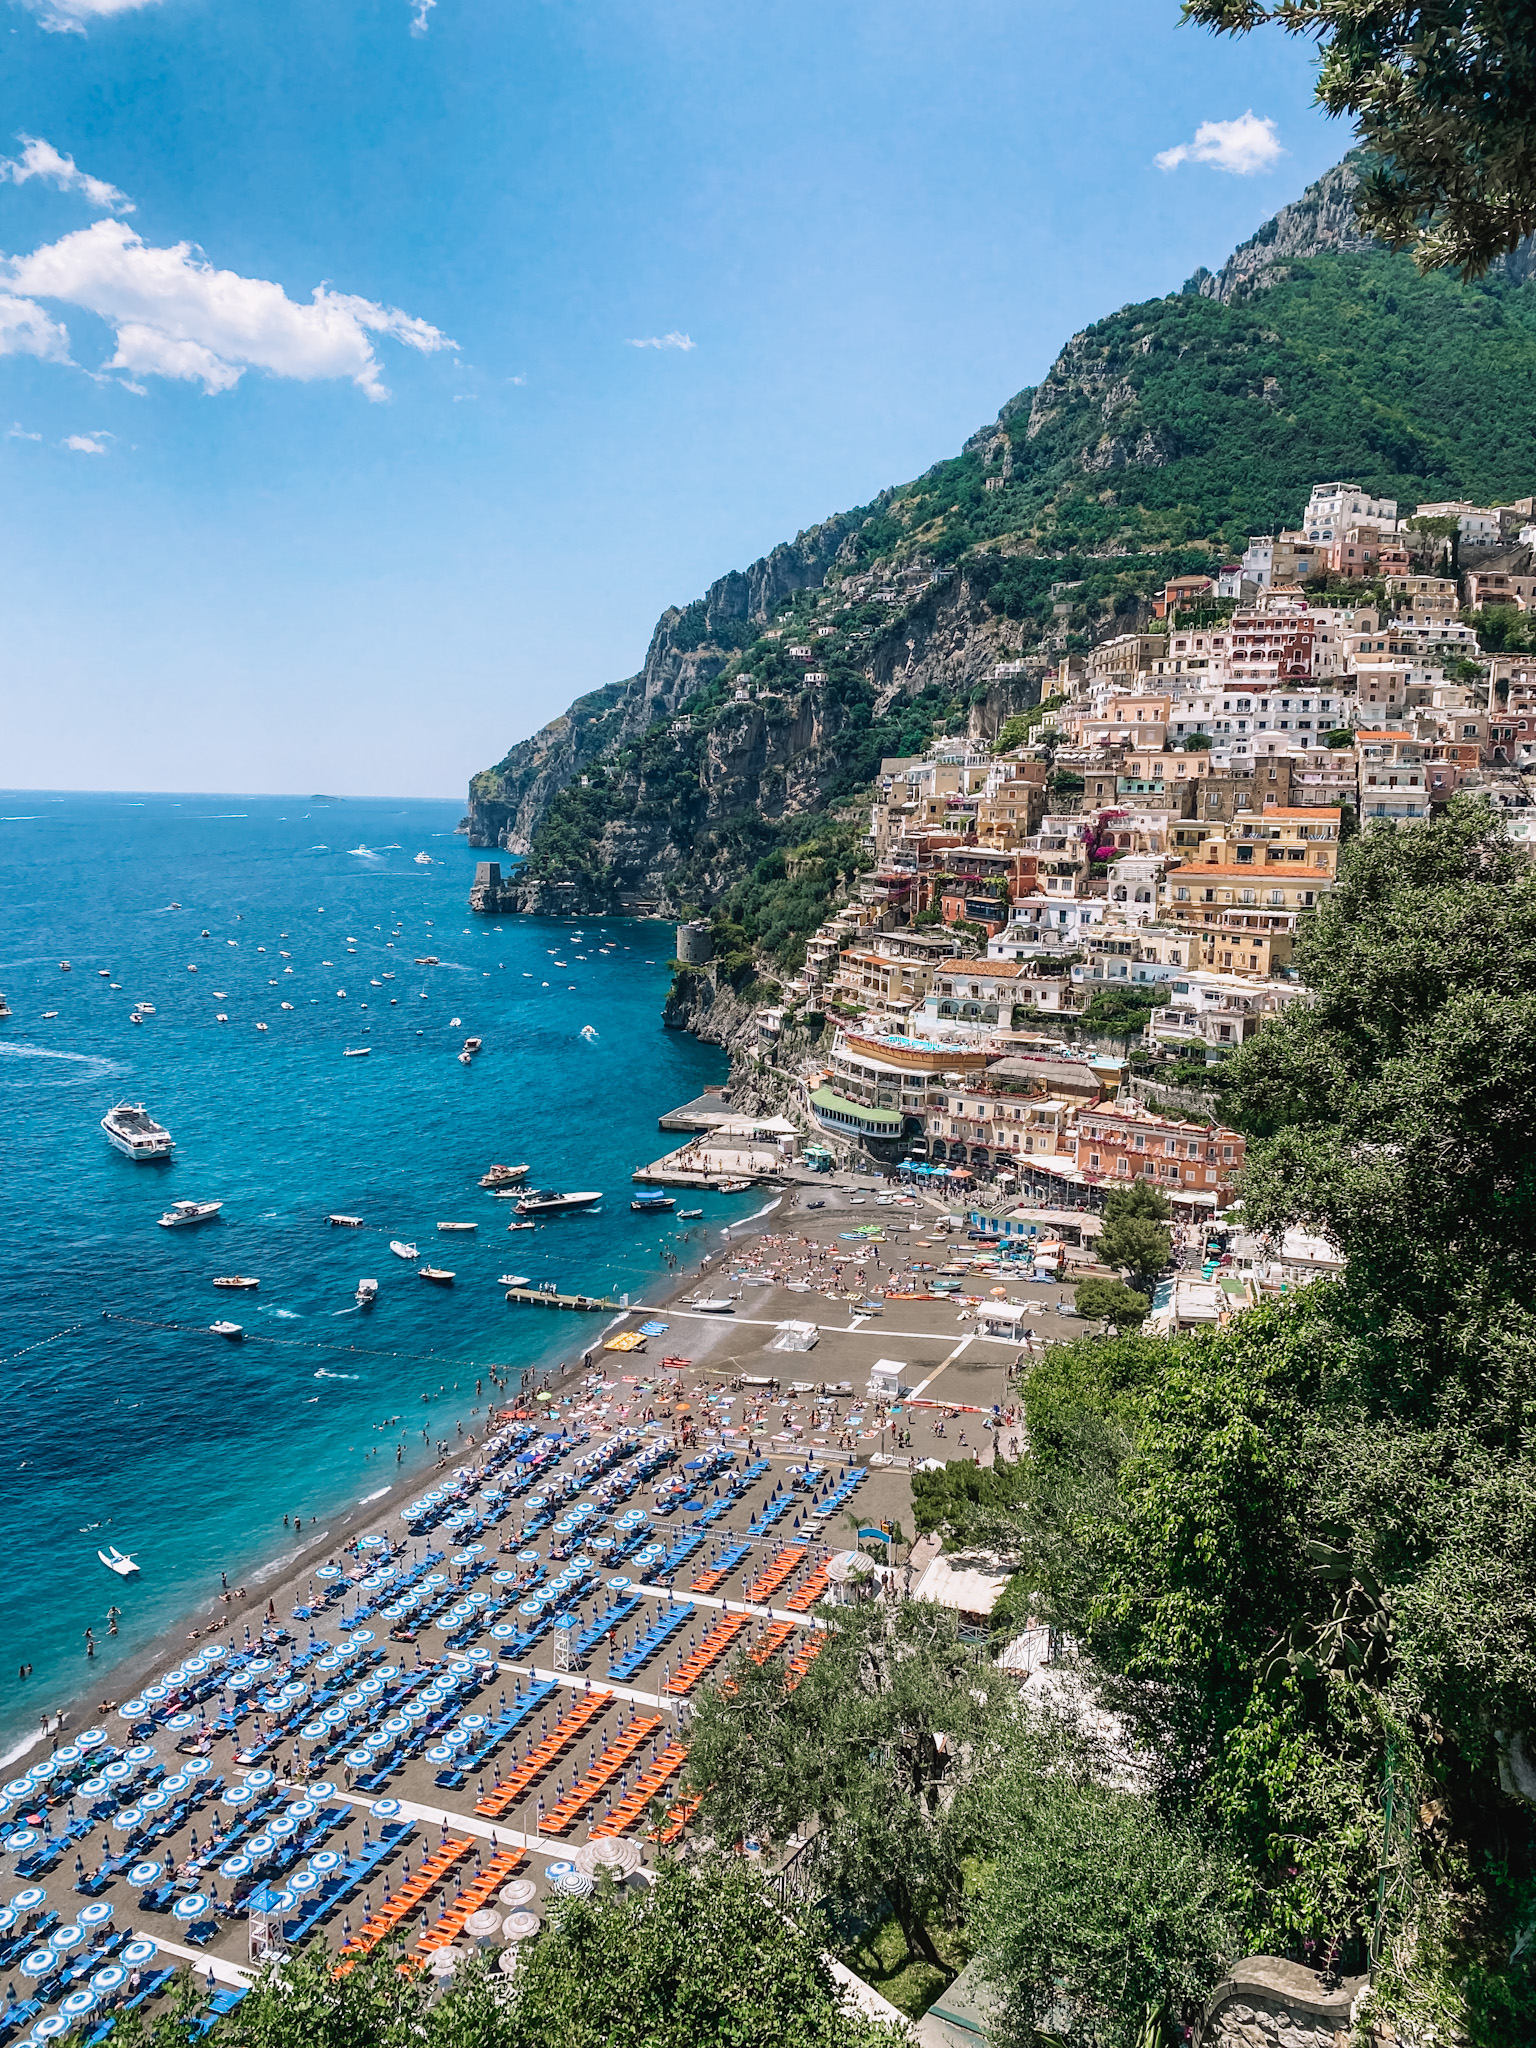 Positano | Amalfi Coast Travel Guide